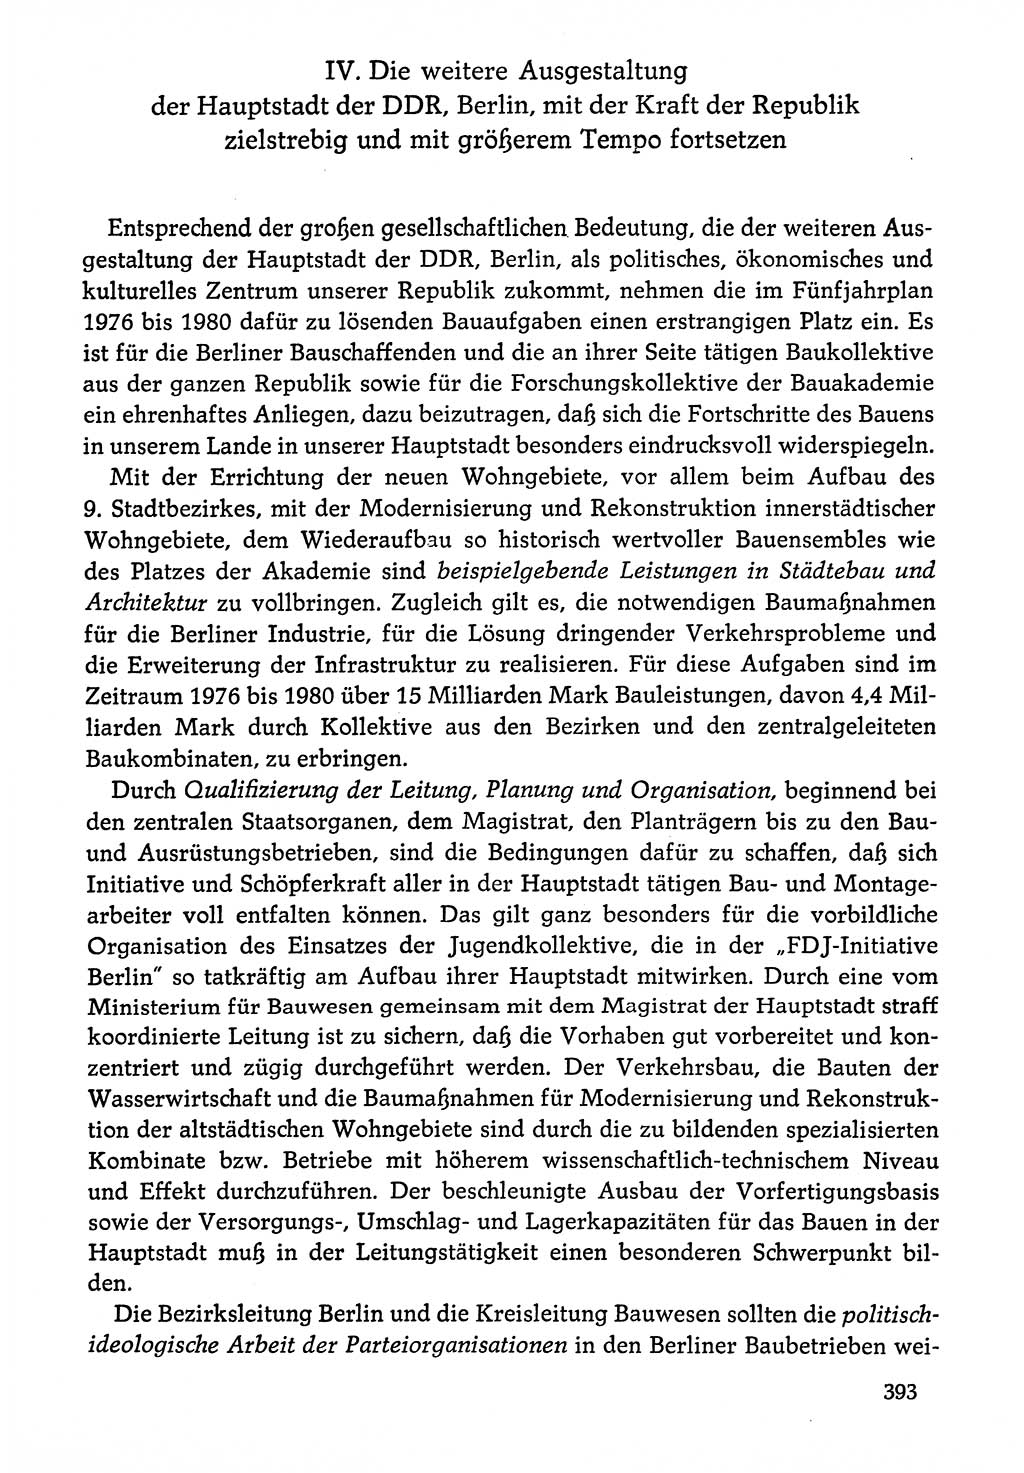 Dokumente der Sozialistischen Einheitspartei Deutschlands (SED) [Deutsche Demokratische Republik (DDR)] 1976-1977, Seite 393 (Dok. SED DDR 1976-1977, S. 393)